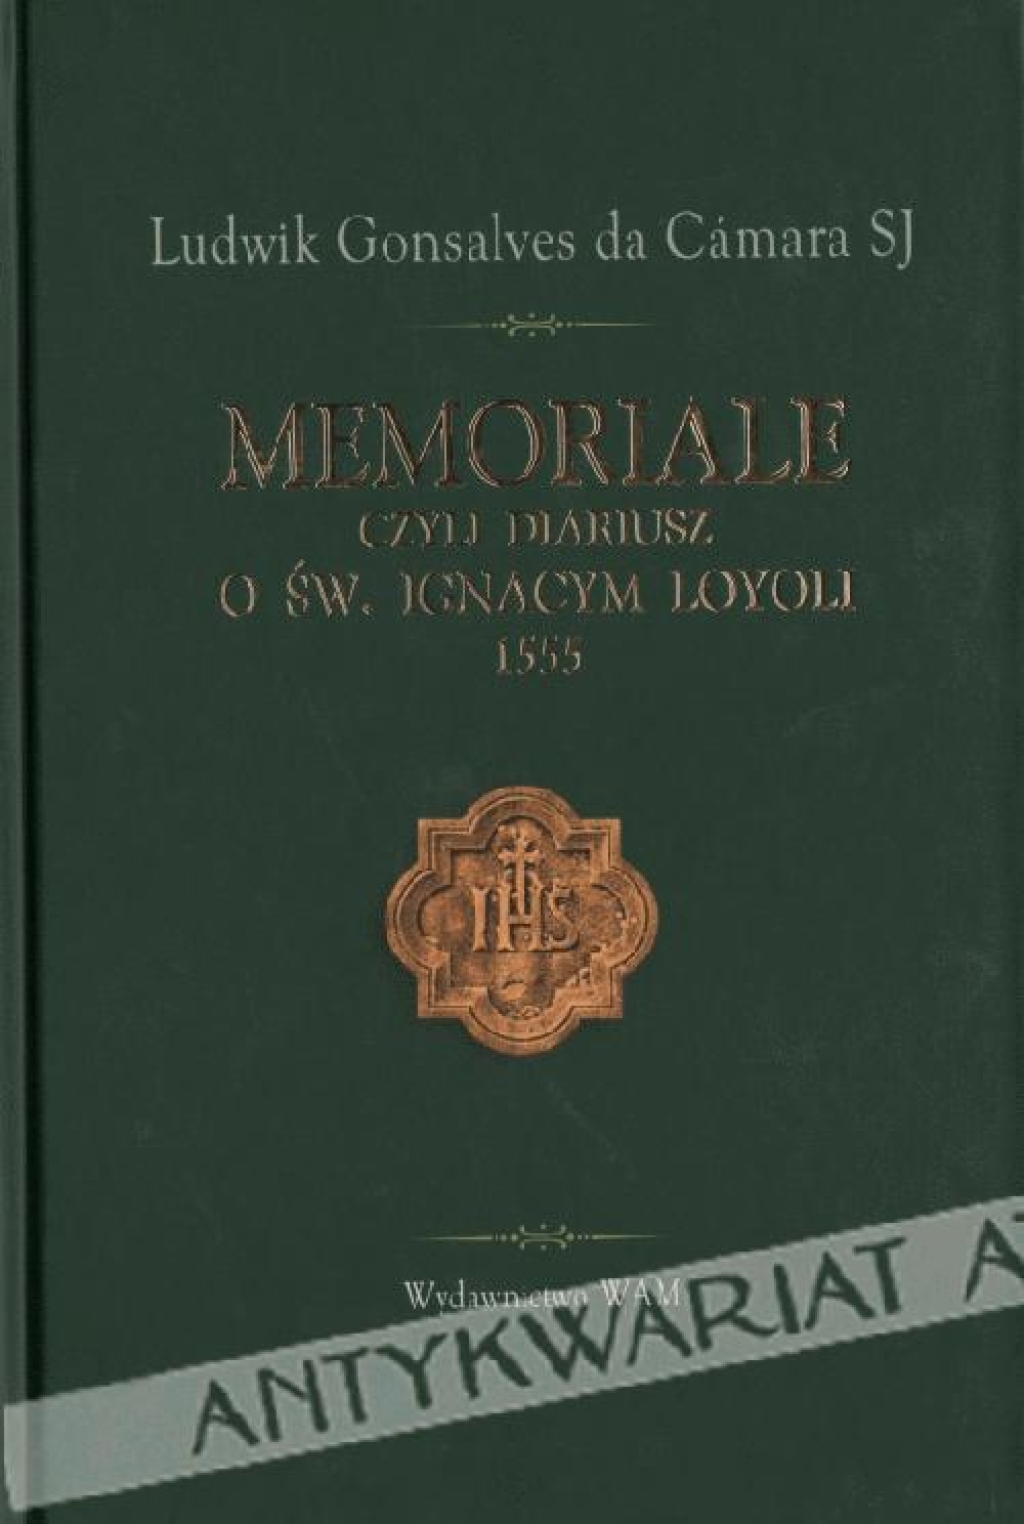 Memoriale czyli Diariusz o św. Ignacym Loyoli 1555